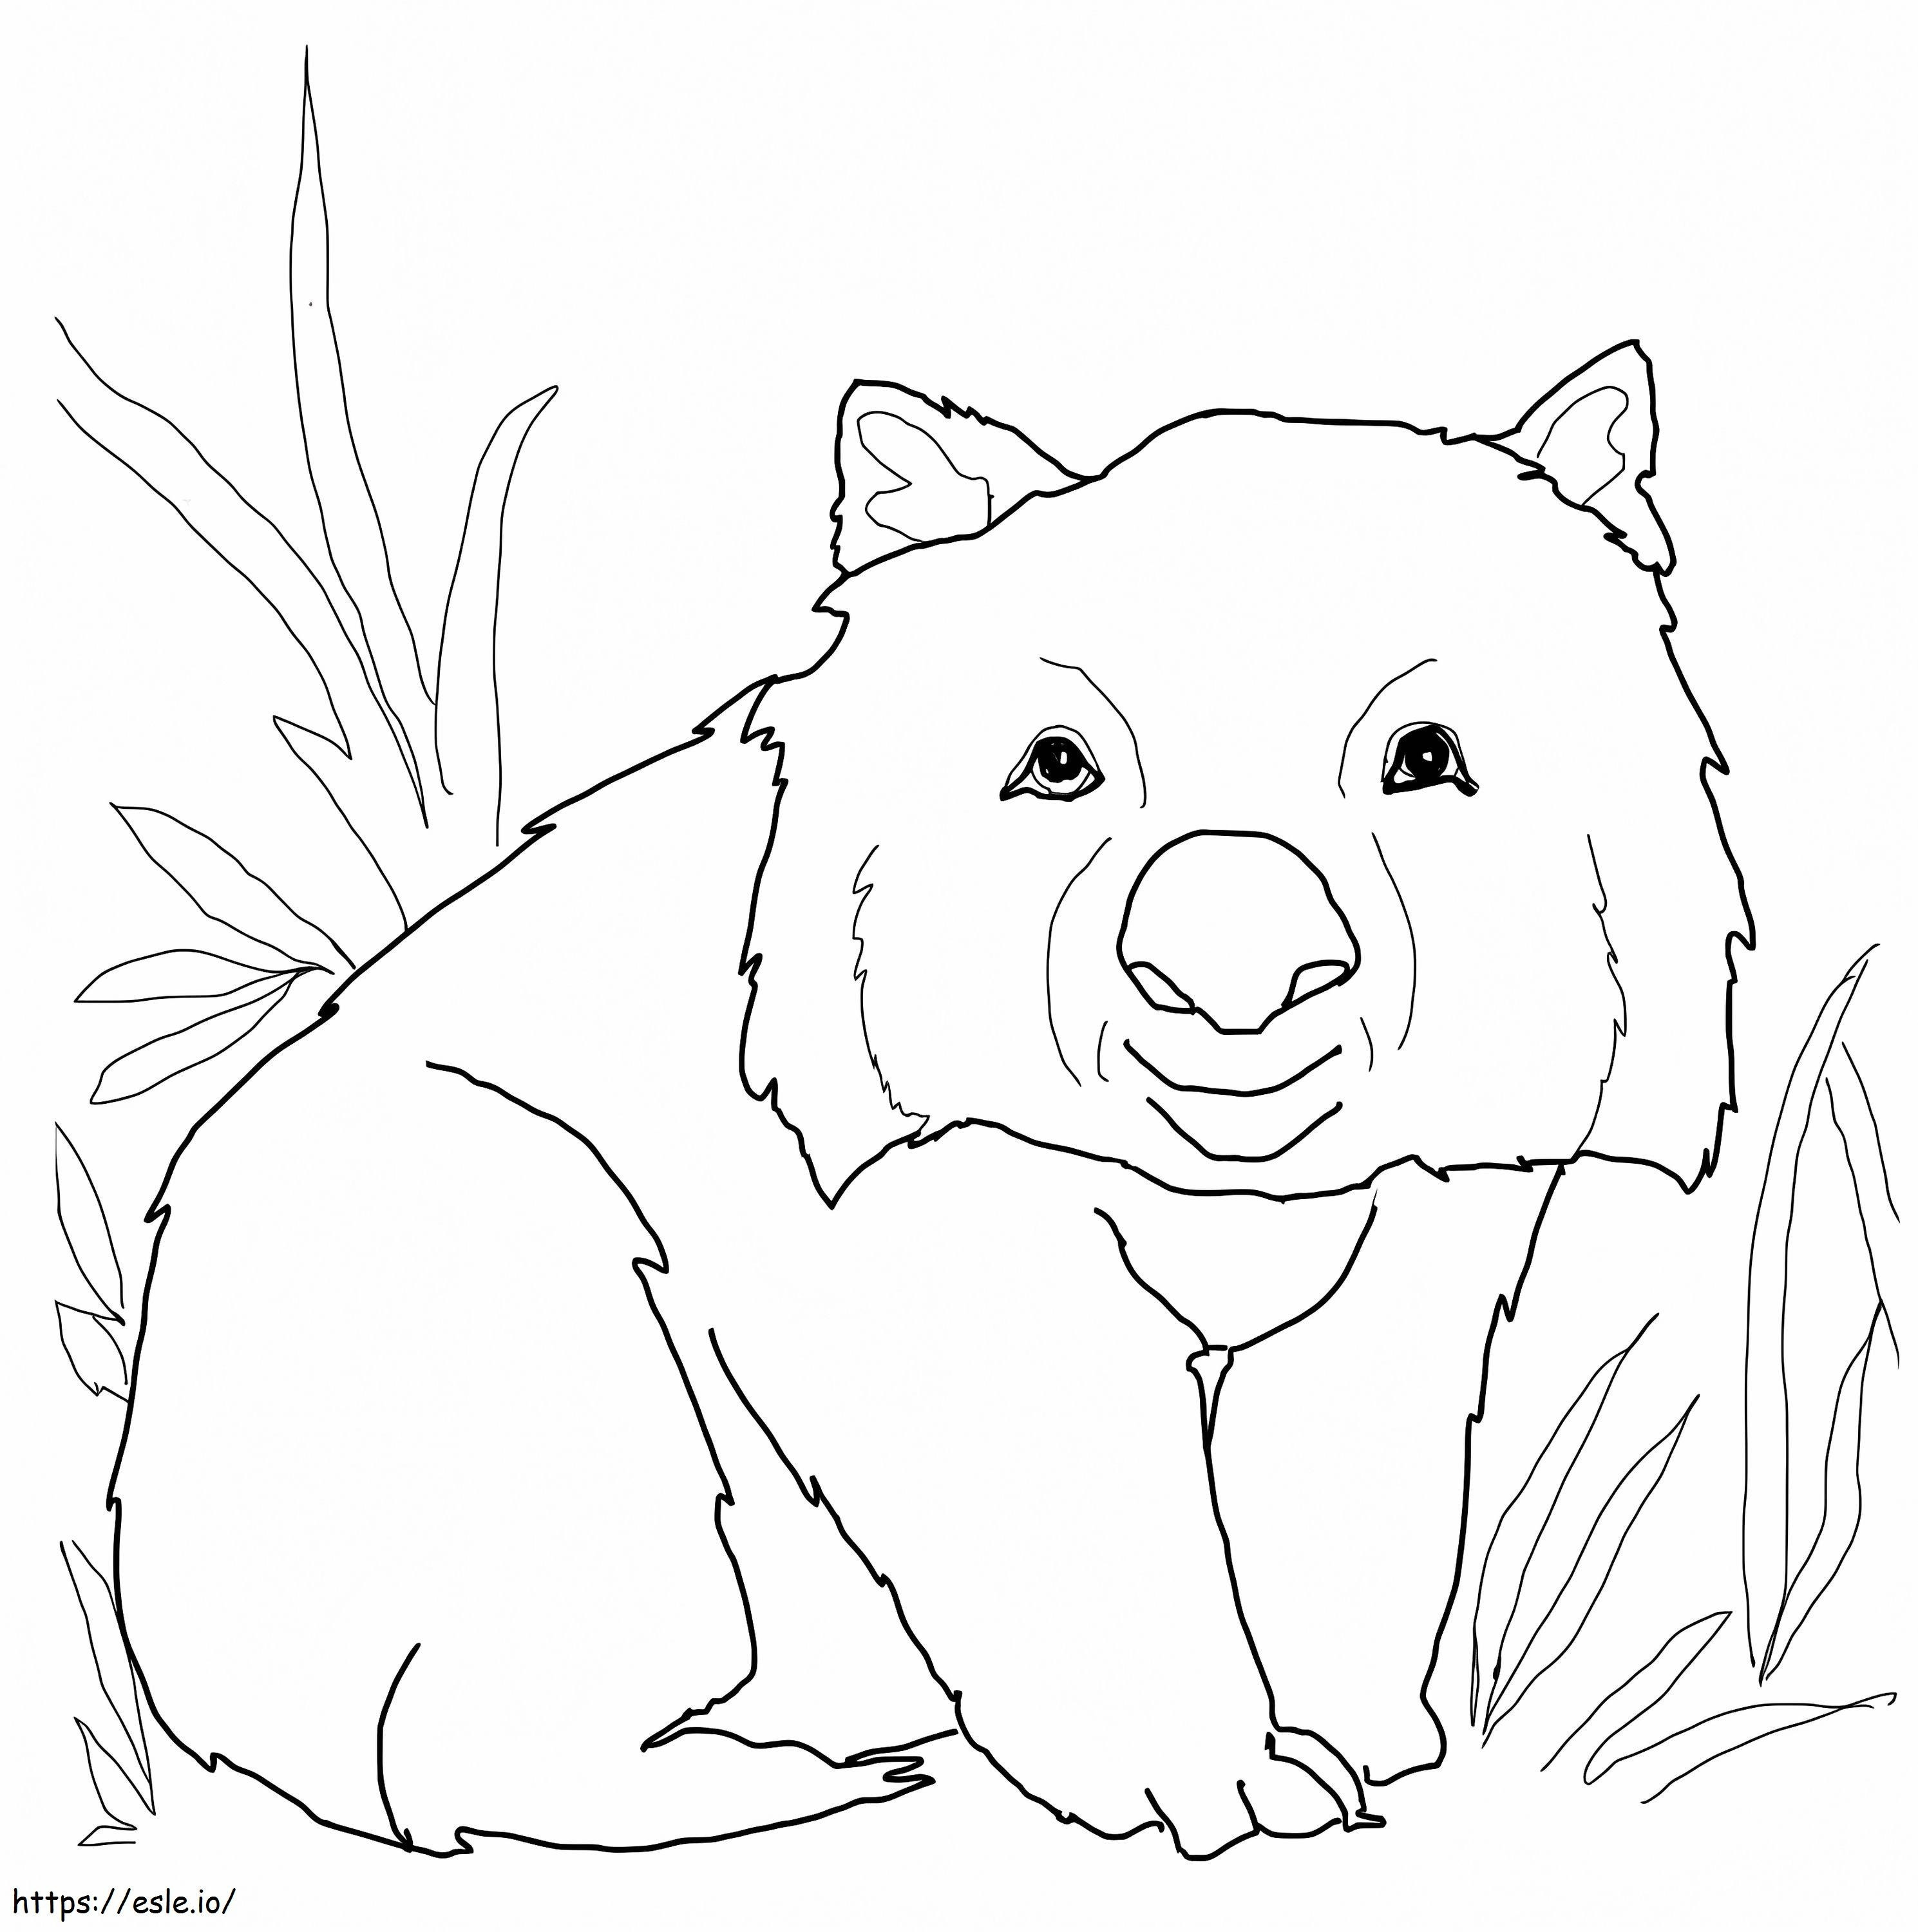 Wombat fericit de colorat